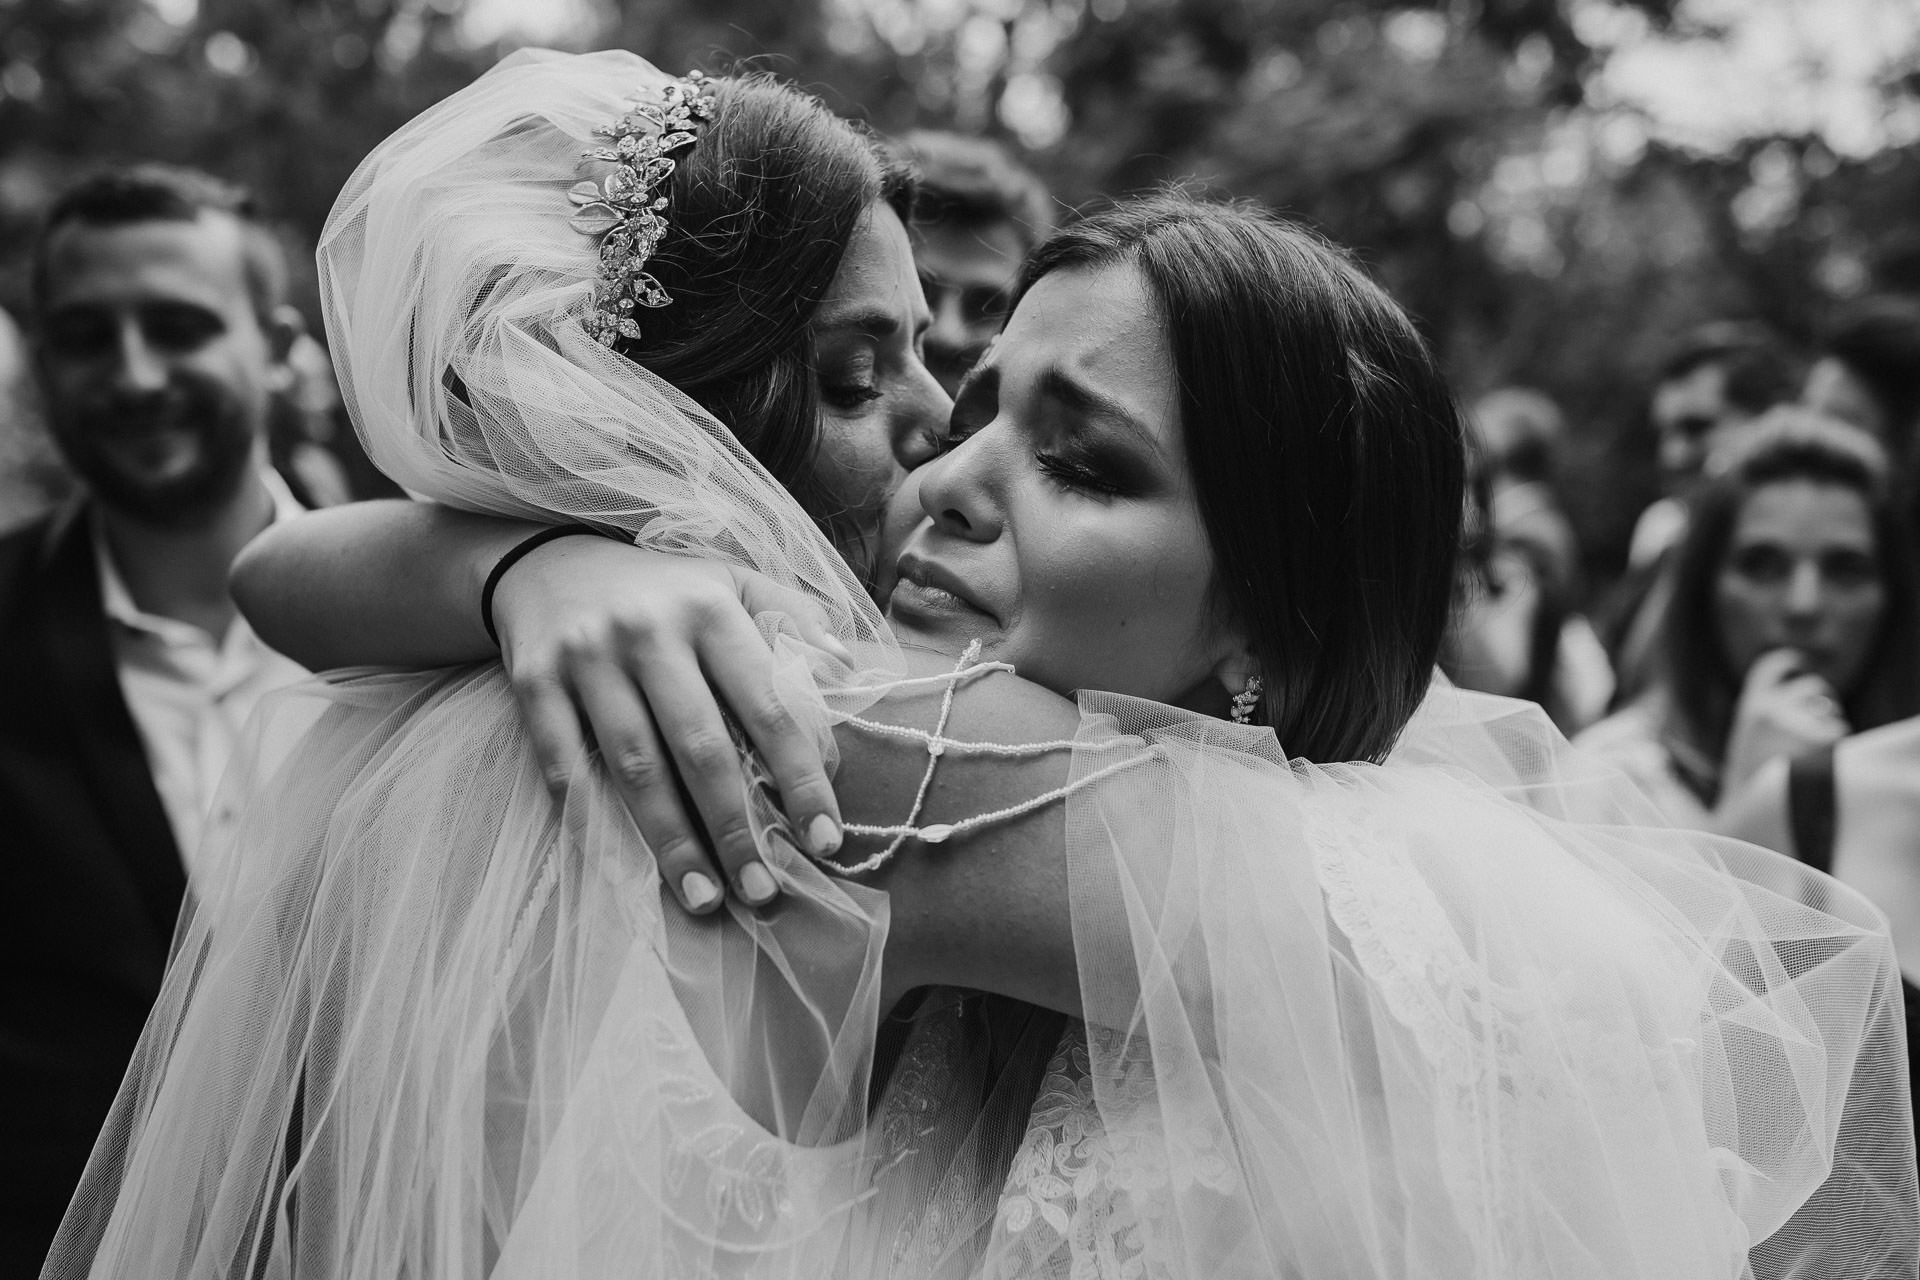 Boda en Campolobos, fotos espontáneas, fotógrafo de bodas, Norman Parunov